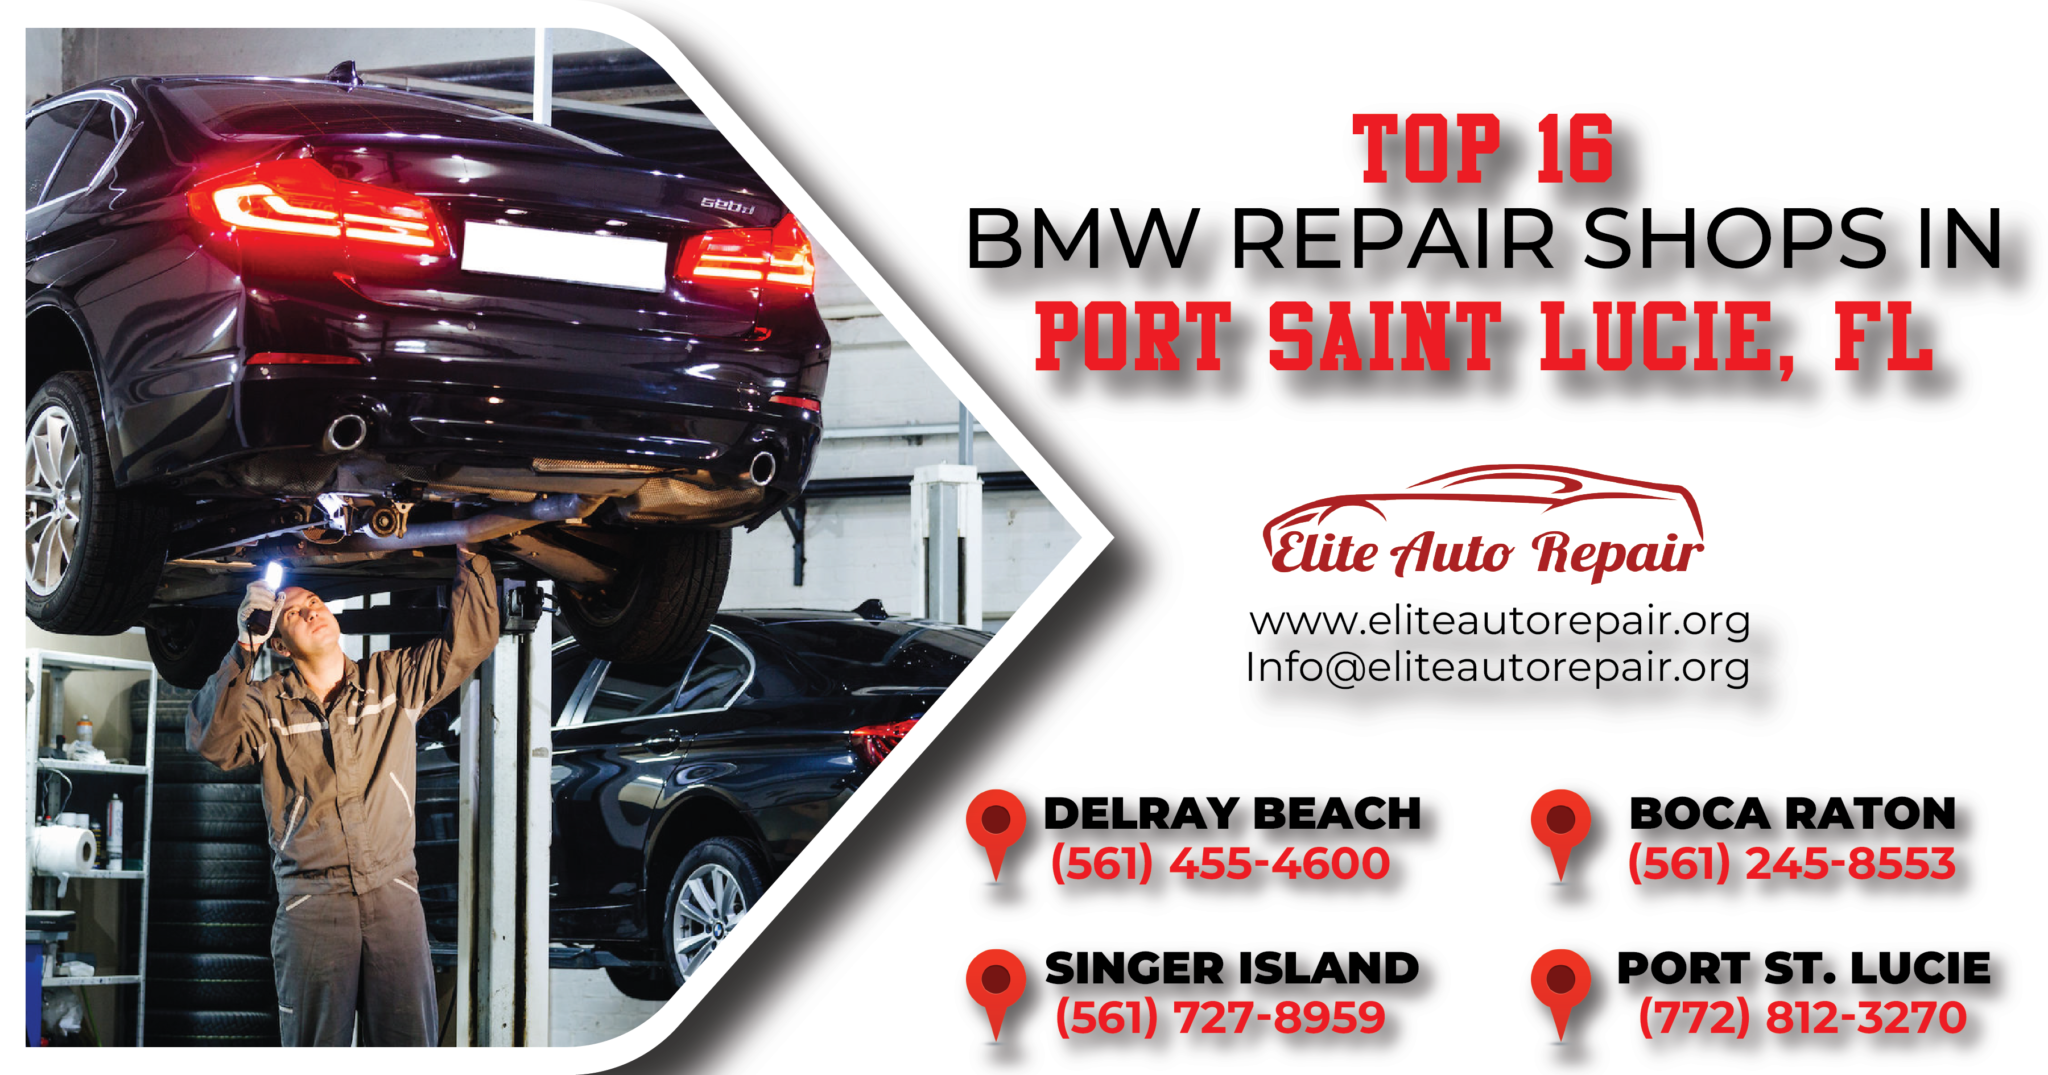 BMW Repair Shops